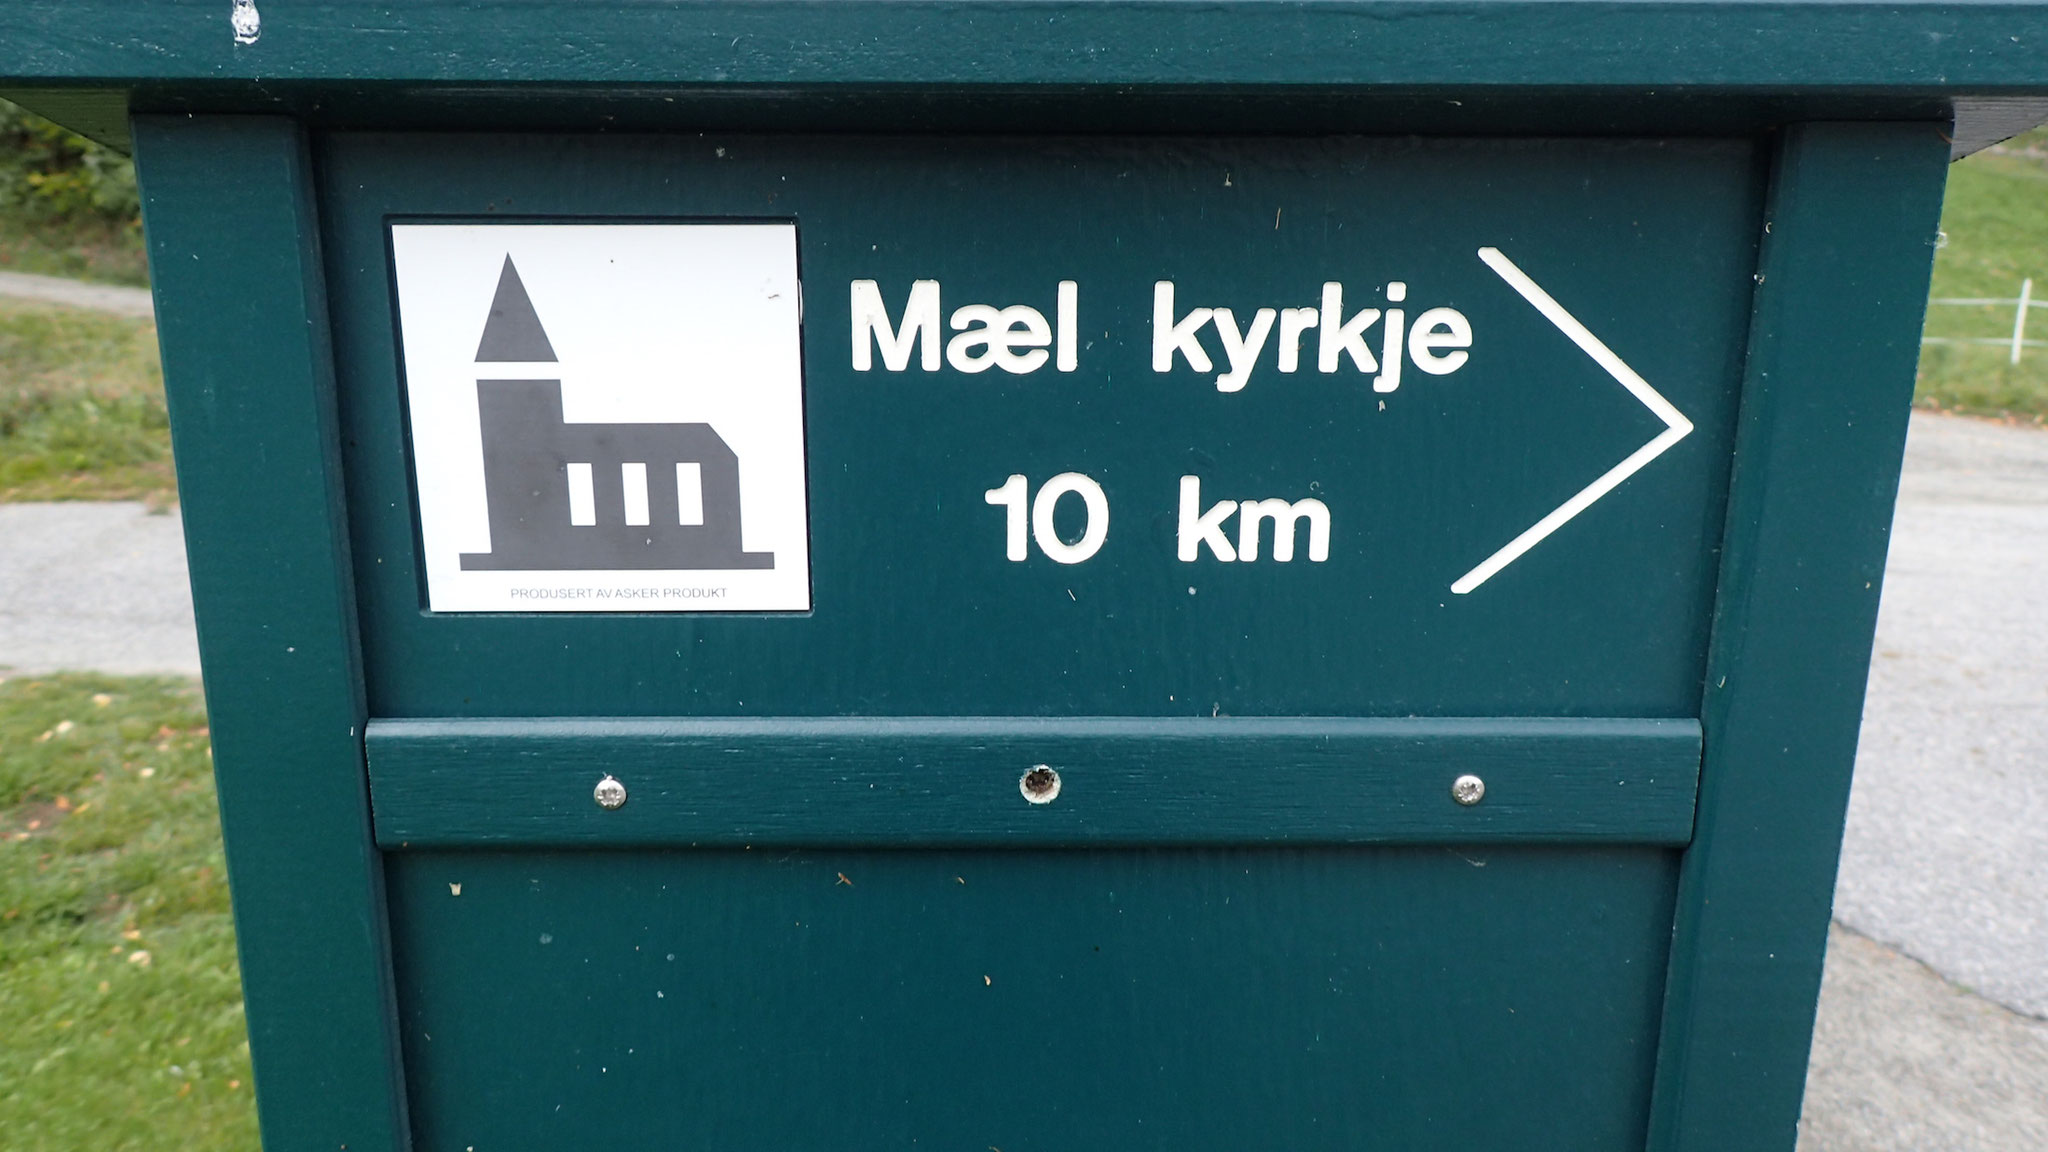 Kvite Kyrkjer sign to Mæl